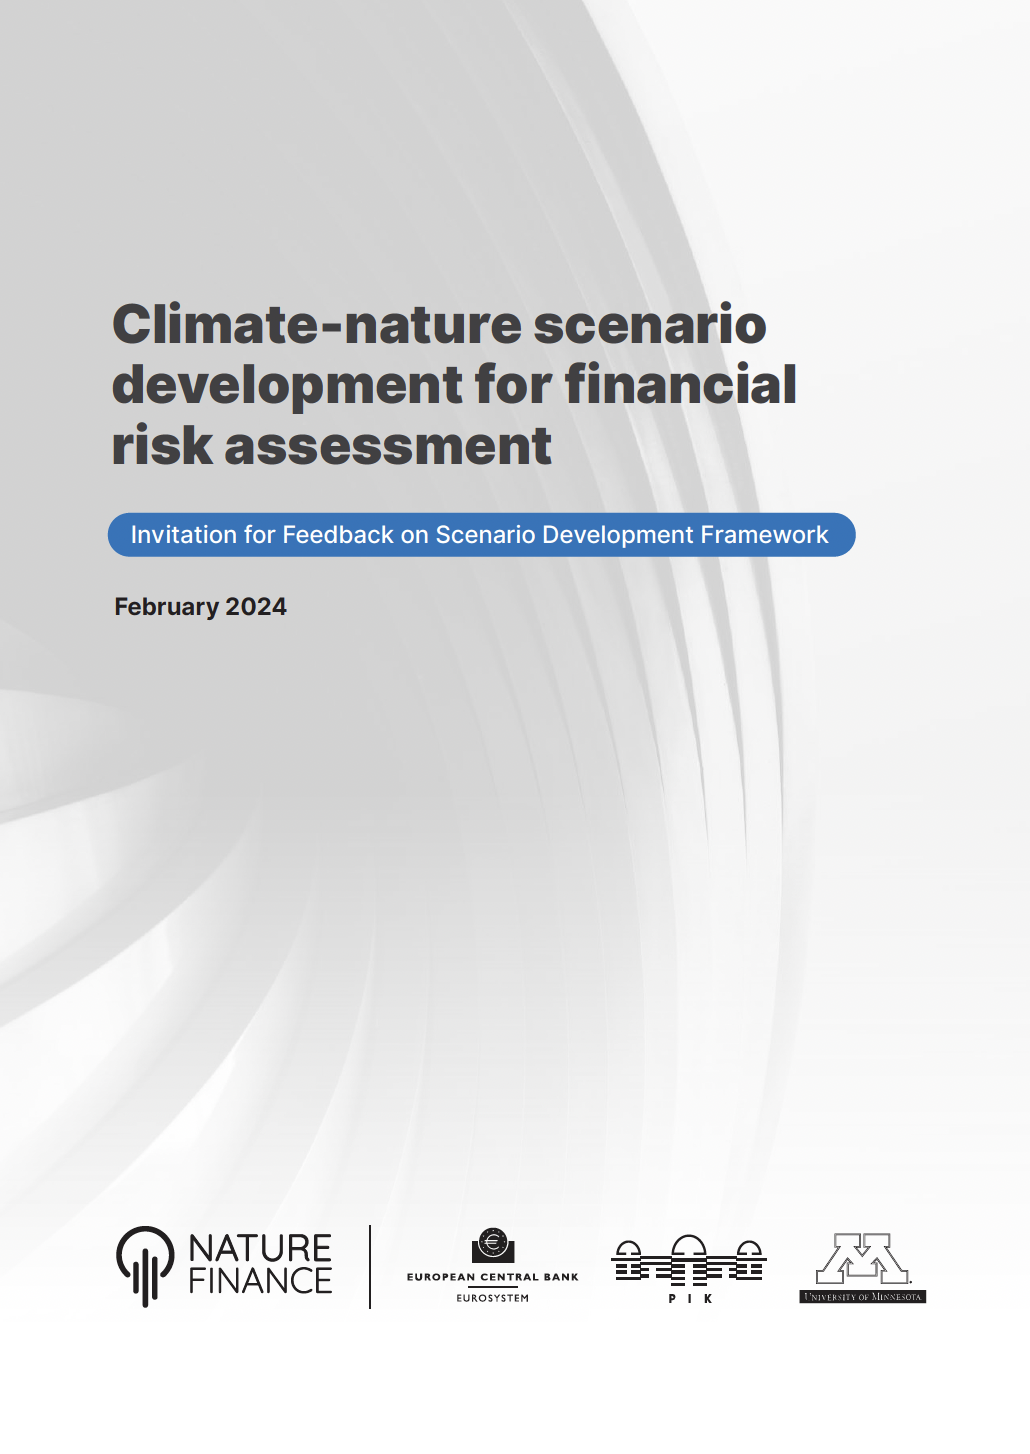 Desenvolvimento de cenários climáticos e naturais para avaliação de riscos financeiros: Convite para feedback sobre a estrutura de desenvolvimento de cenários  